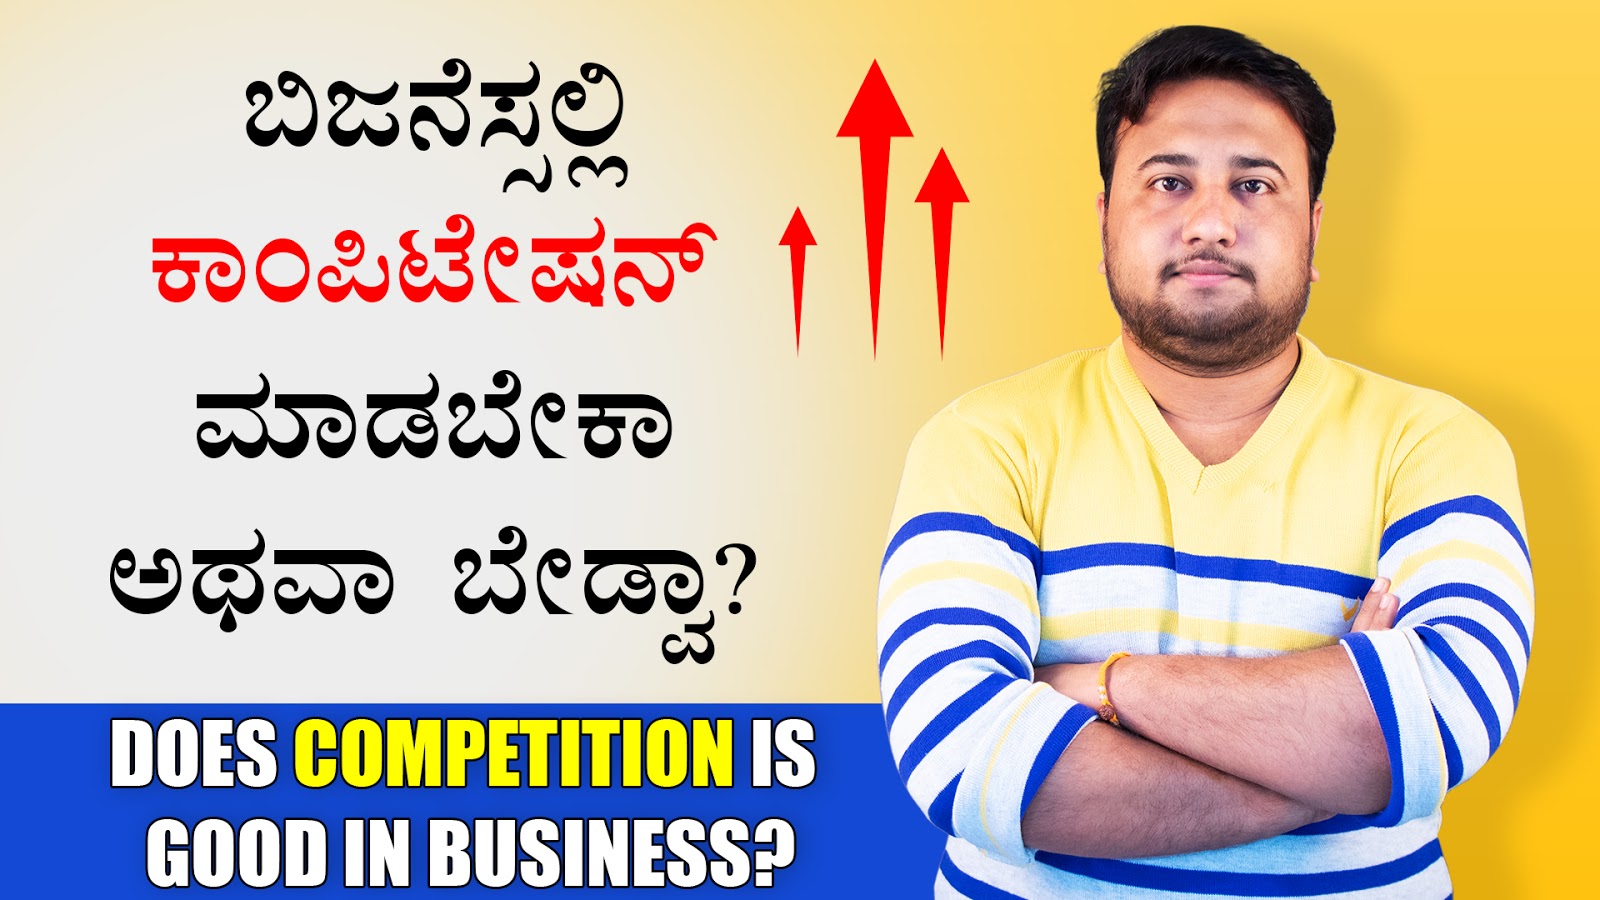 ಬಿಜನೆಸ್ಸಲ್ಲಿ ಕಾಂಪಿಟೇಷನ್ ಮಾಡಬೇಕಾ ಅಥವಾ ಬೇಡ್ವಾ? Does Competition is good in Business?